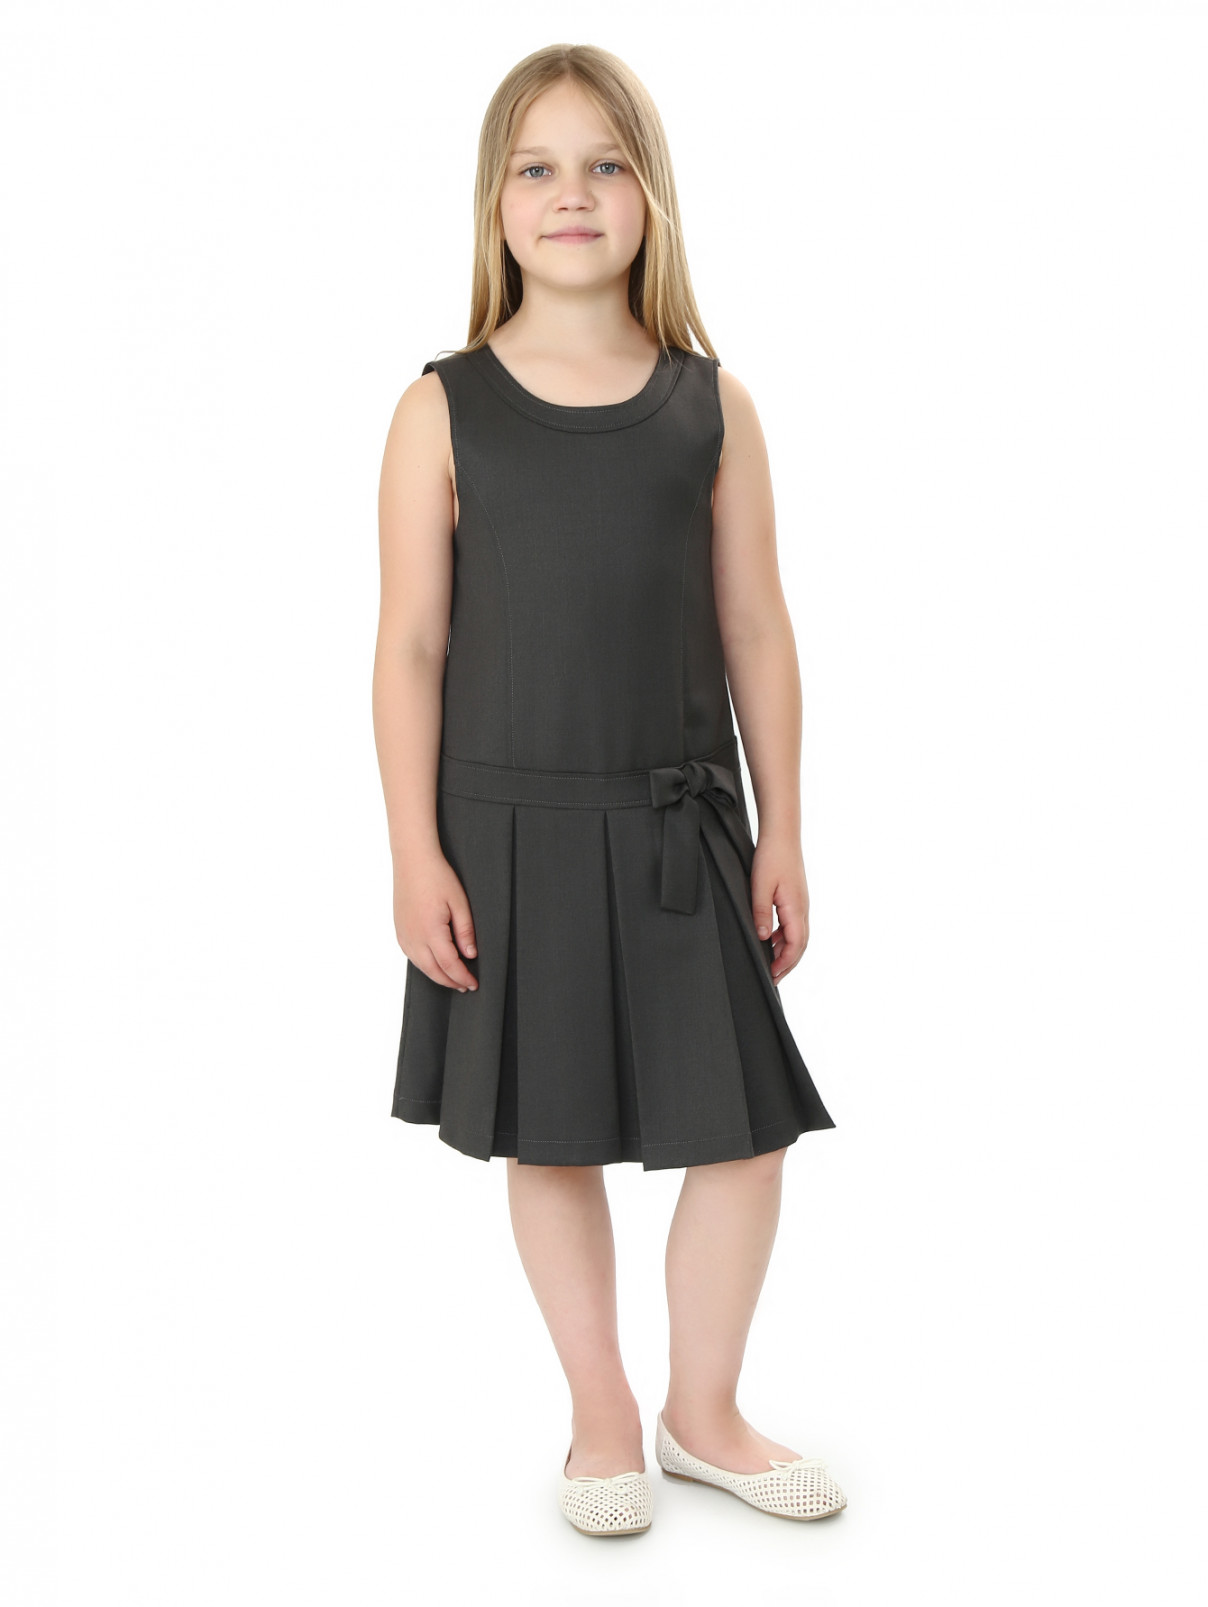 Платье прямого фасона без рукавов Aletta Couture  –  Модель Общий вид  – Цвет:  Серый